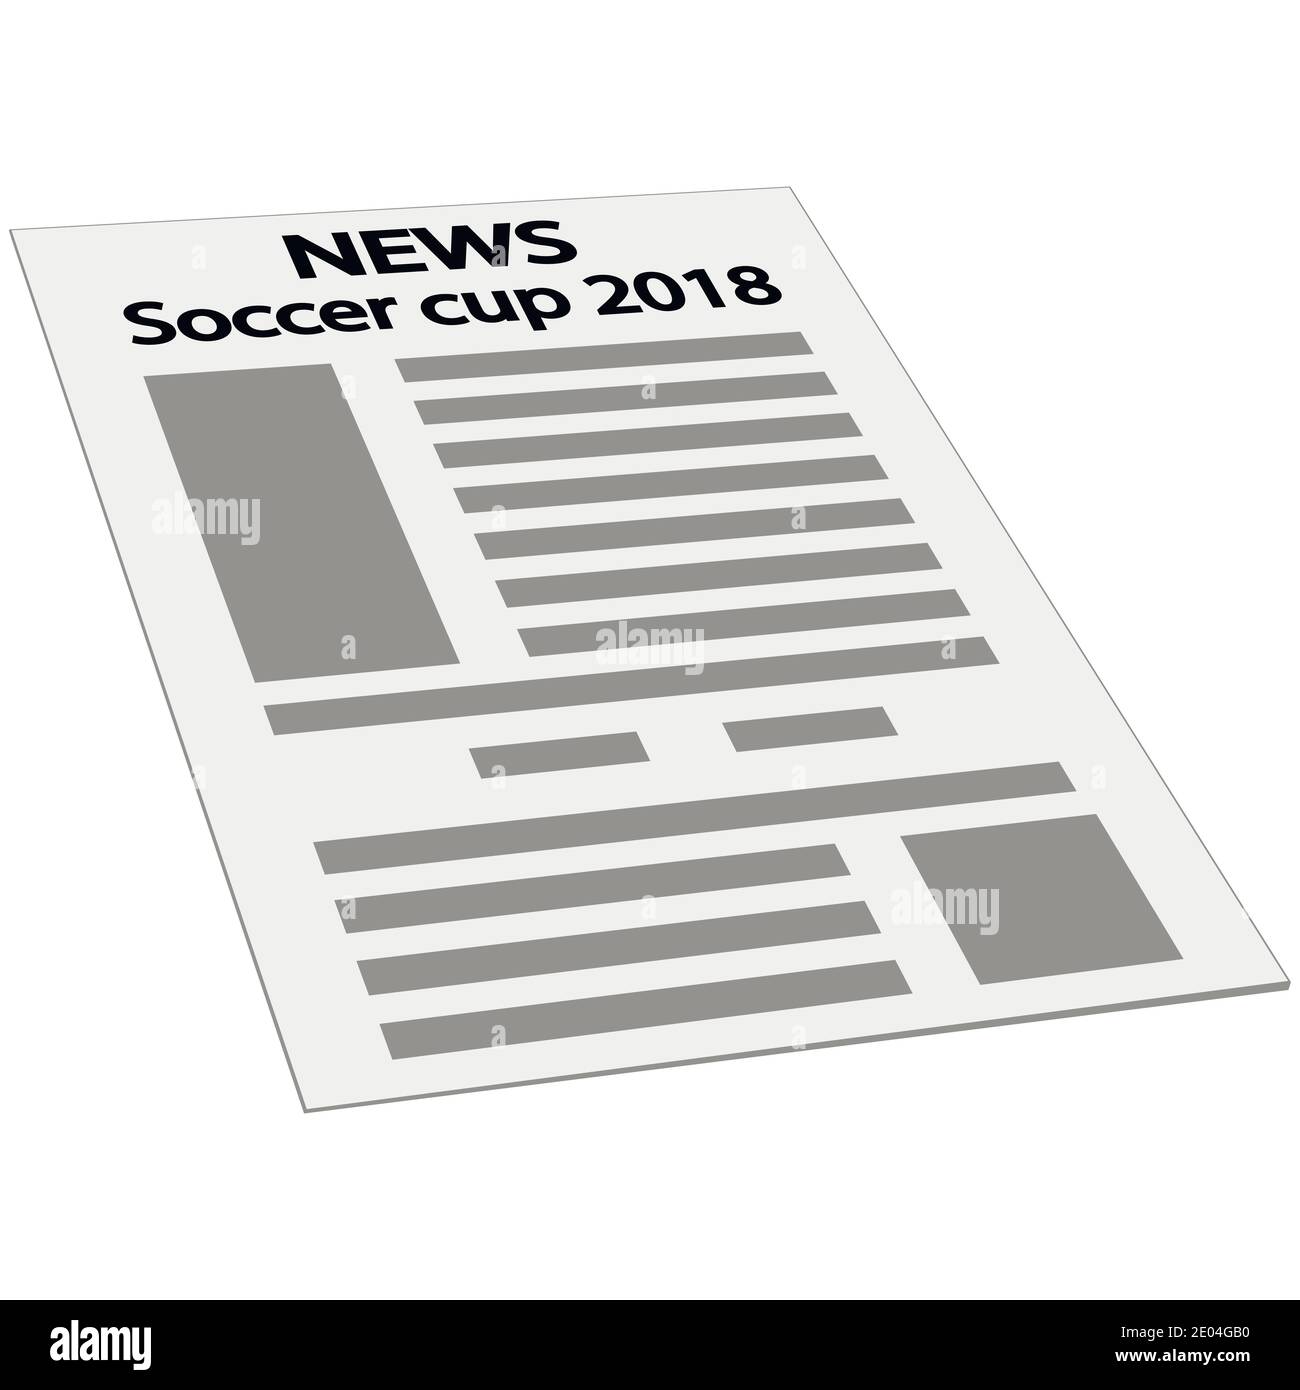 Icona copertina news, mockup template prima pagina news, isometria prospettiva Soccer Cup 2018 torneo mondiale internazionale Illustrazione Vettoriale